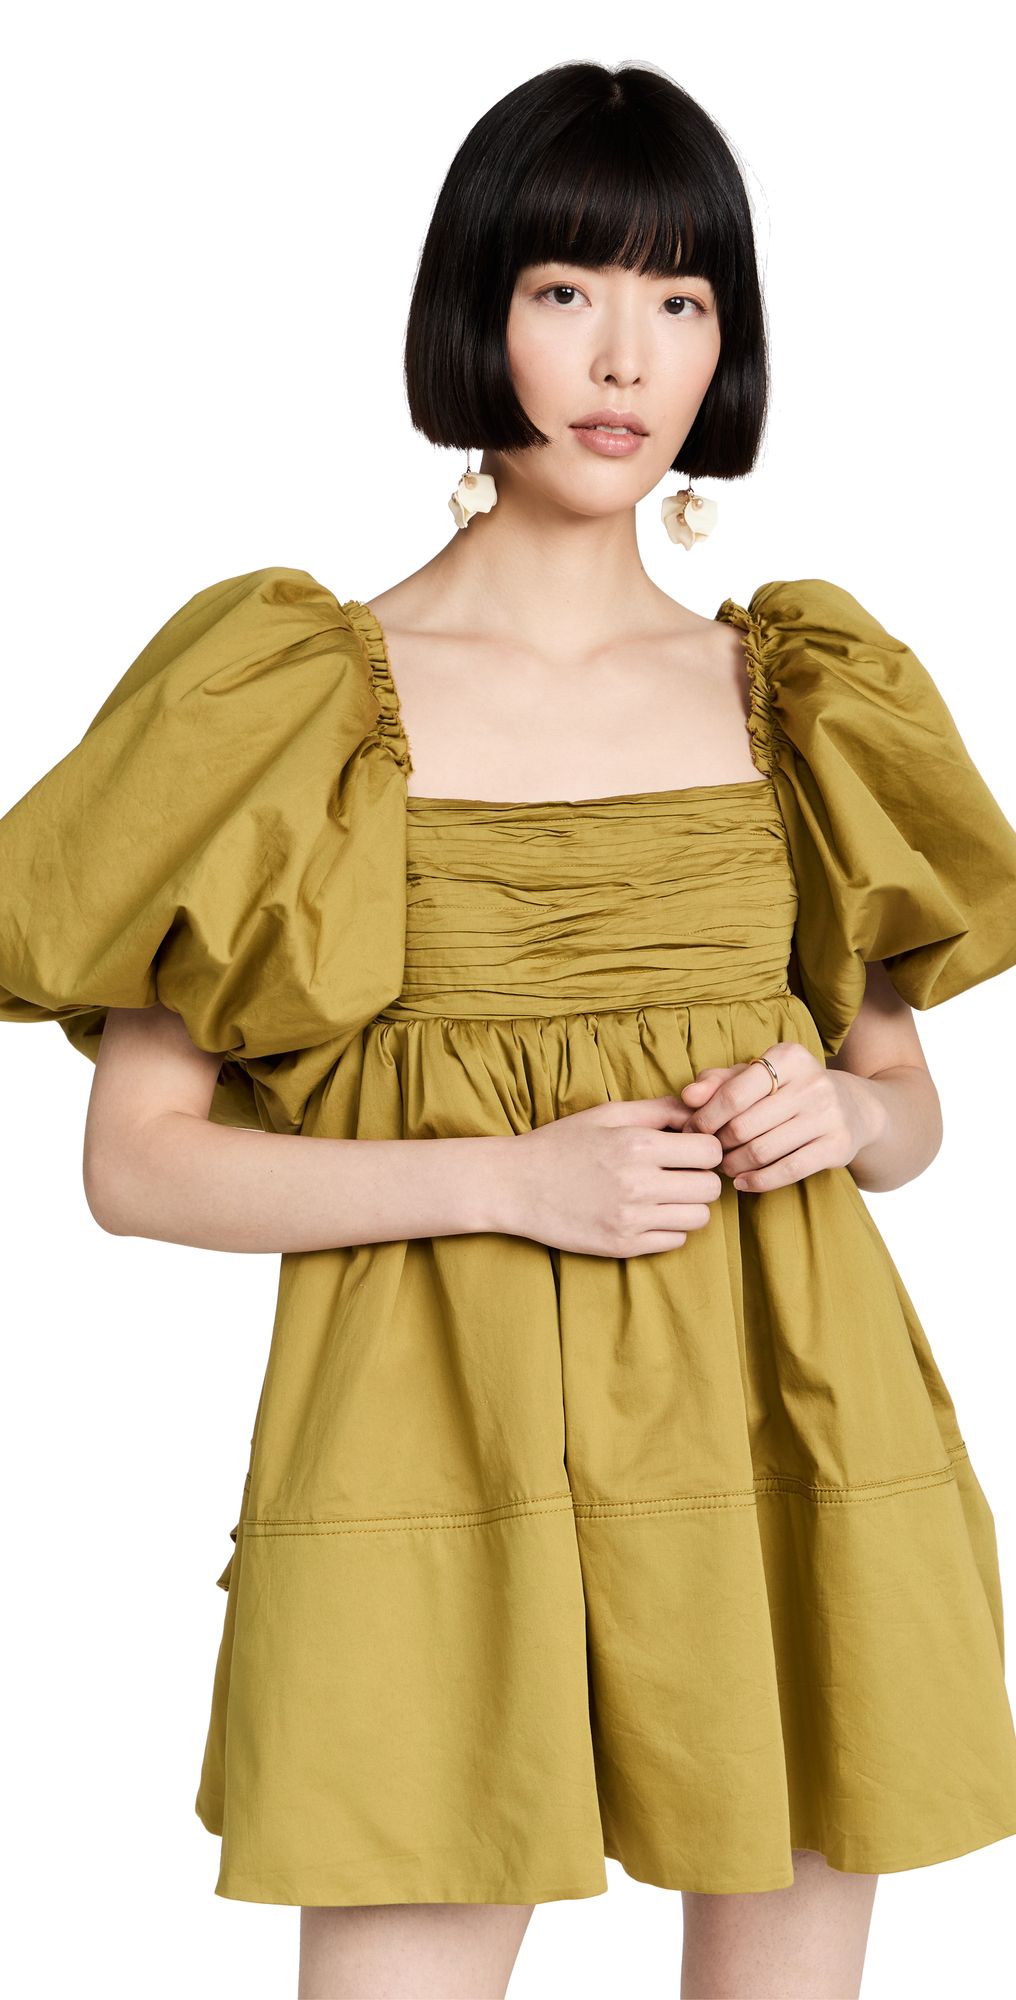 Casabianca Puff Sleeve Dress | Shopbop